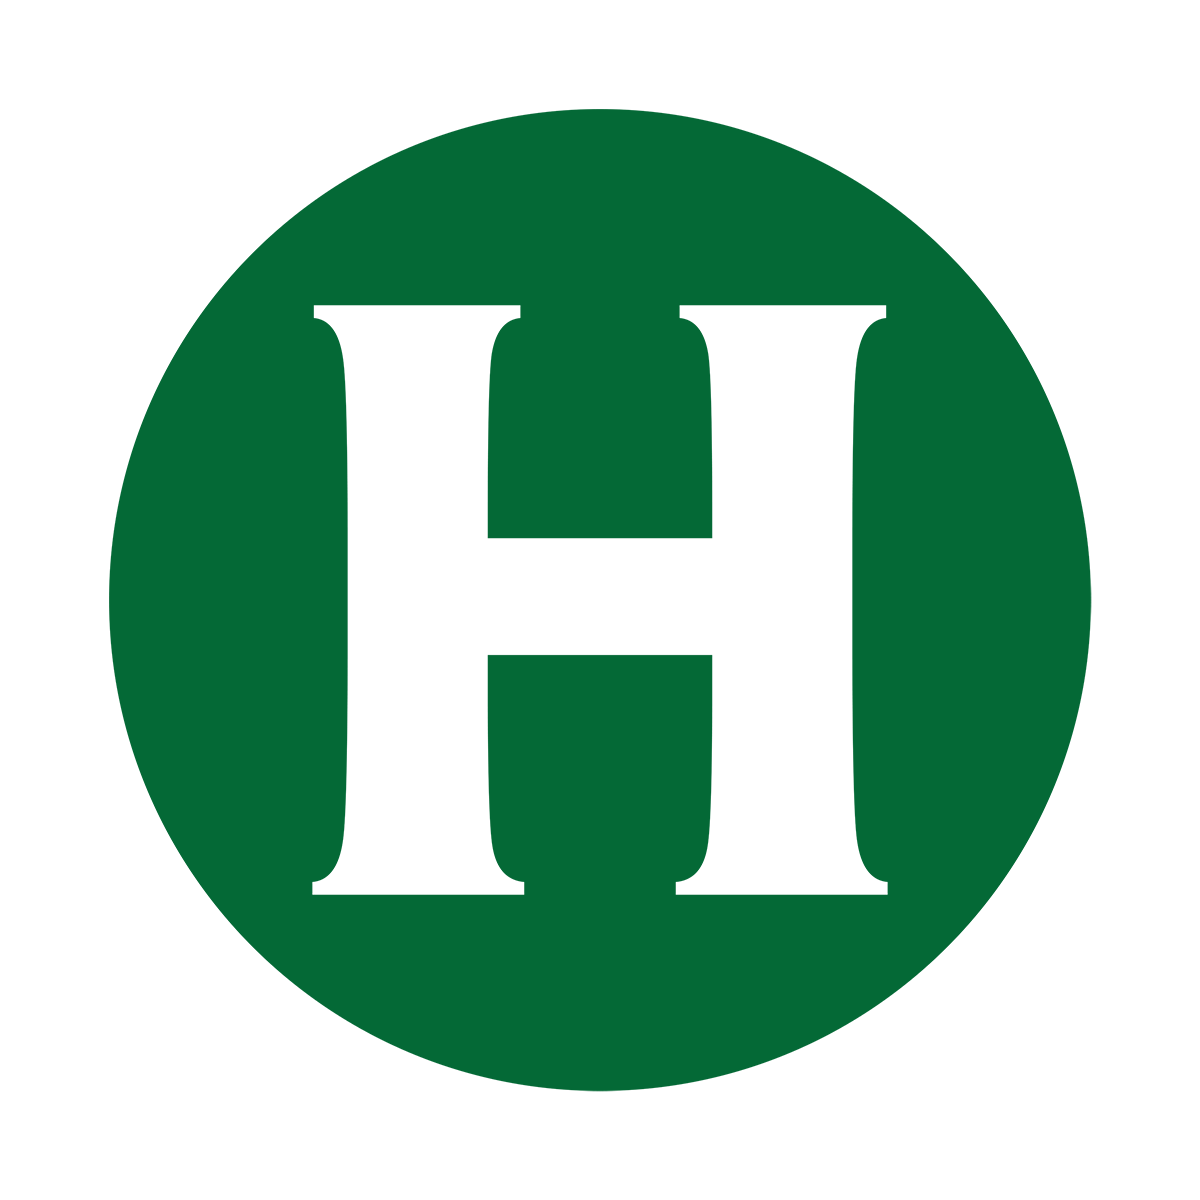 HSU logo